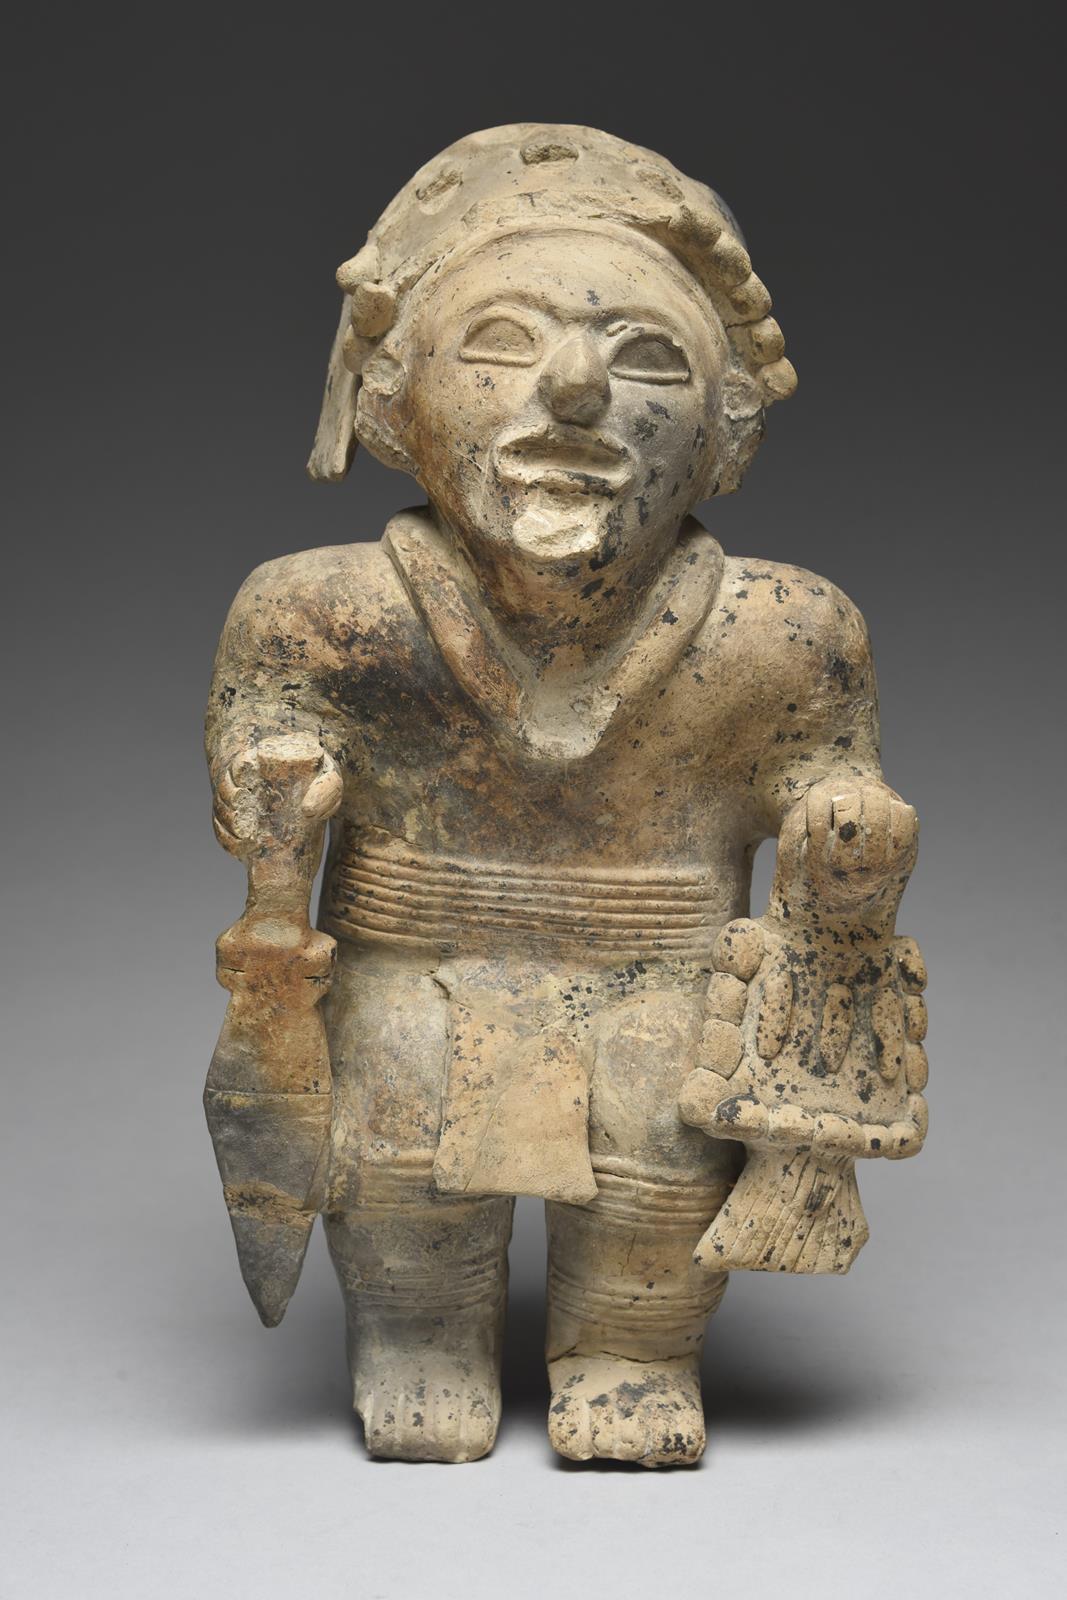 A Jama Coaque standing warrior Ecuador, circa 500 BC - 600 AD pottery, wearing a headdress, necklace